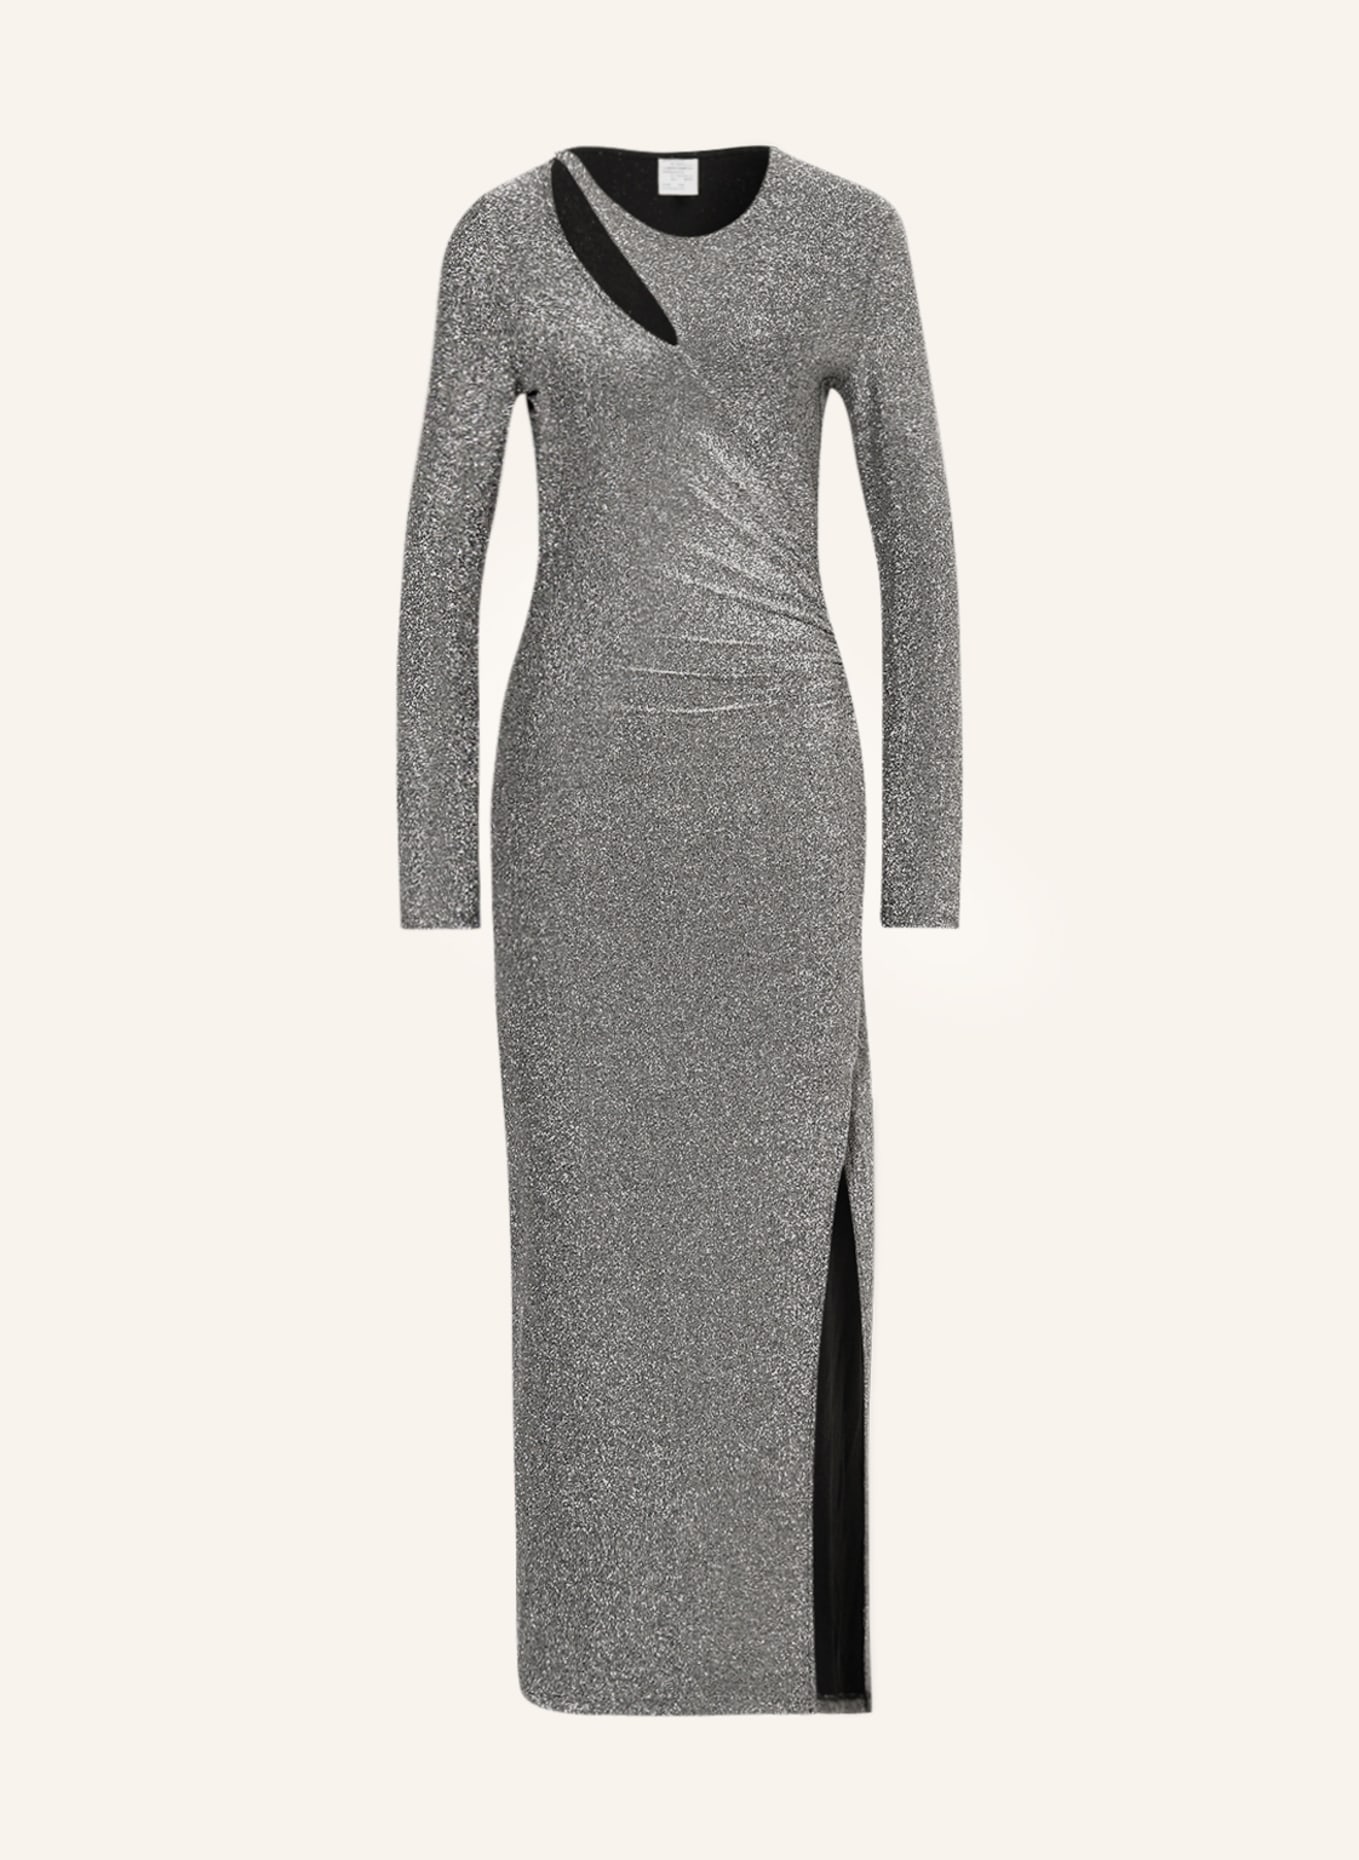 BAUM UND PFERDGARTEN Kleid JILLIANE mit Glitzergarn und Cut-out, Farbe: SILBER (Bild 1)